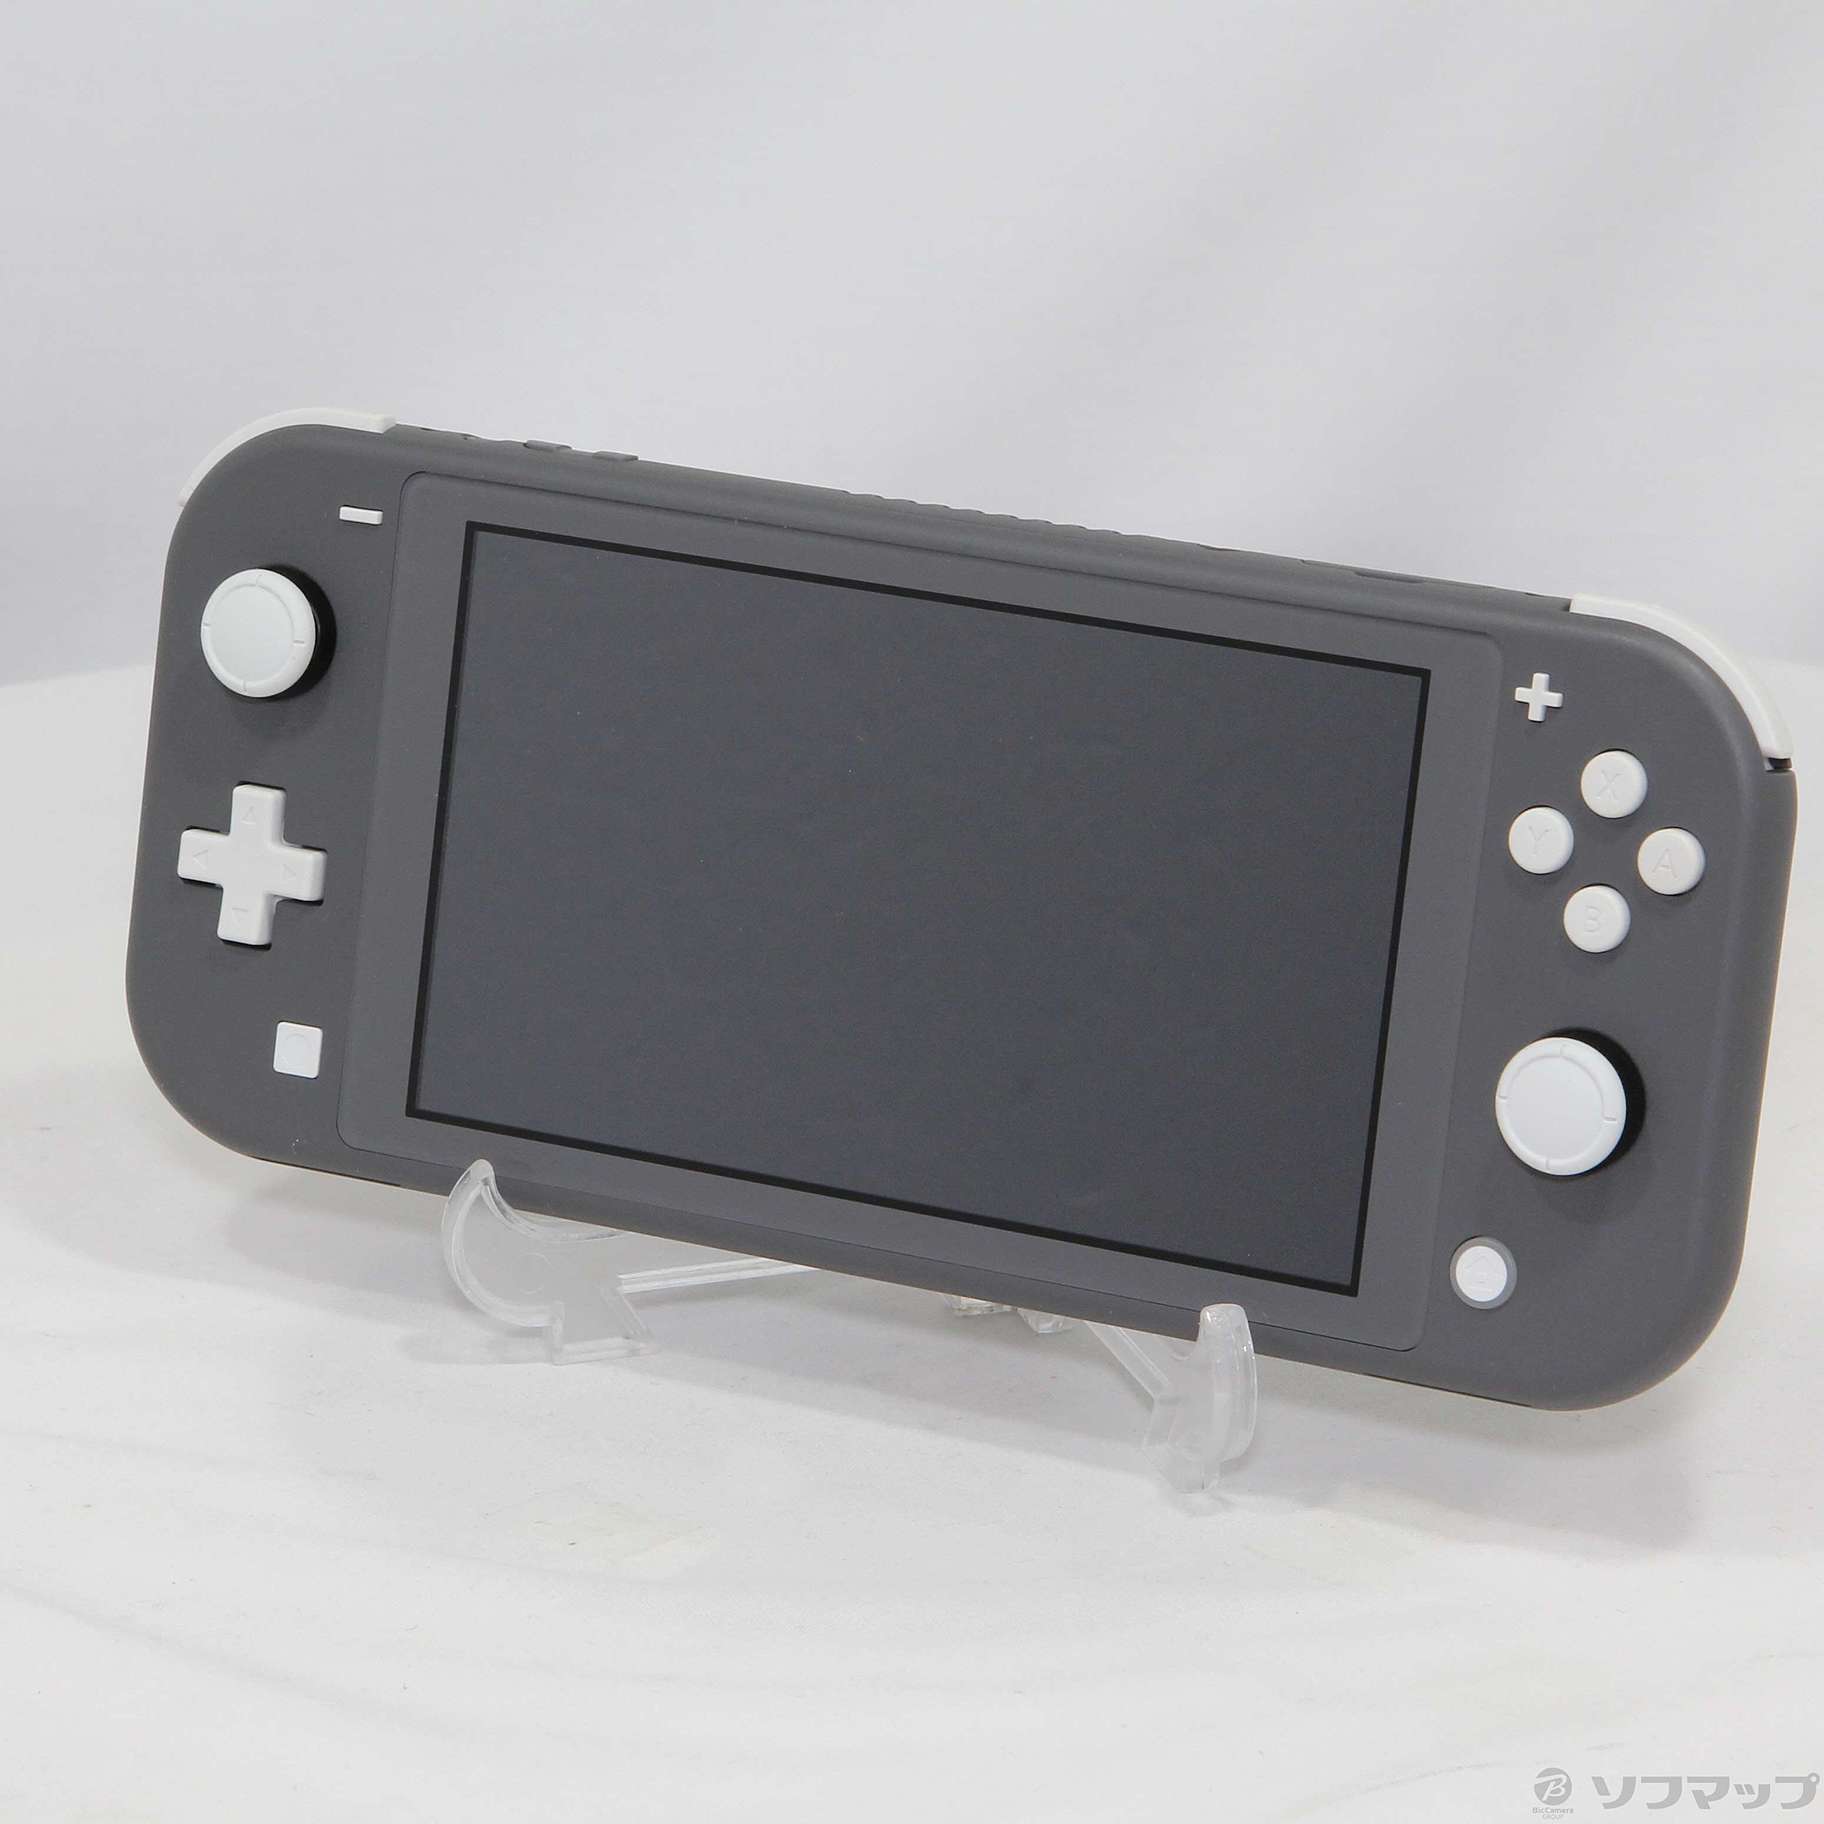 【美品】Nintendo Switch Liteグレー